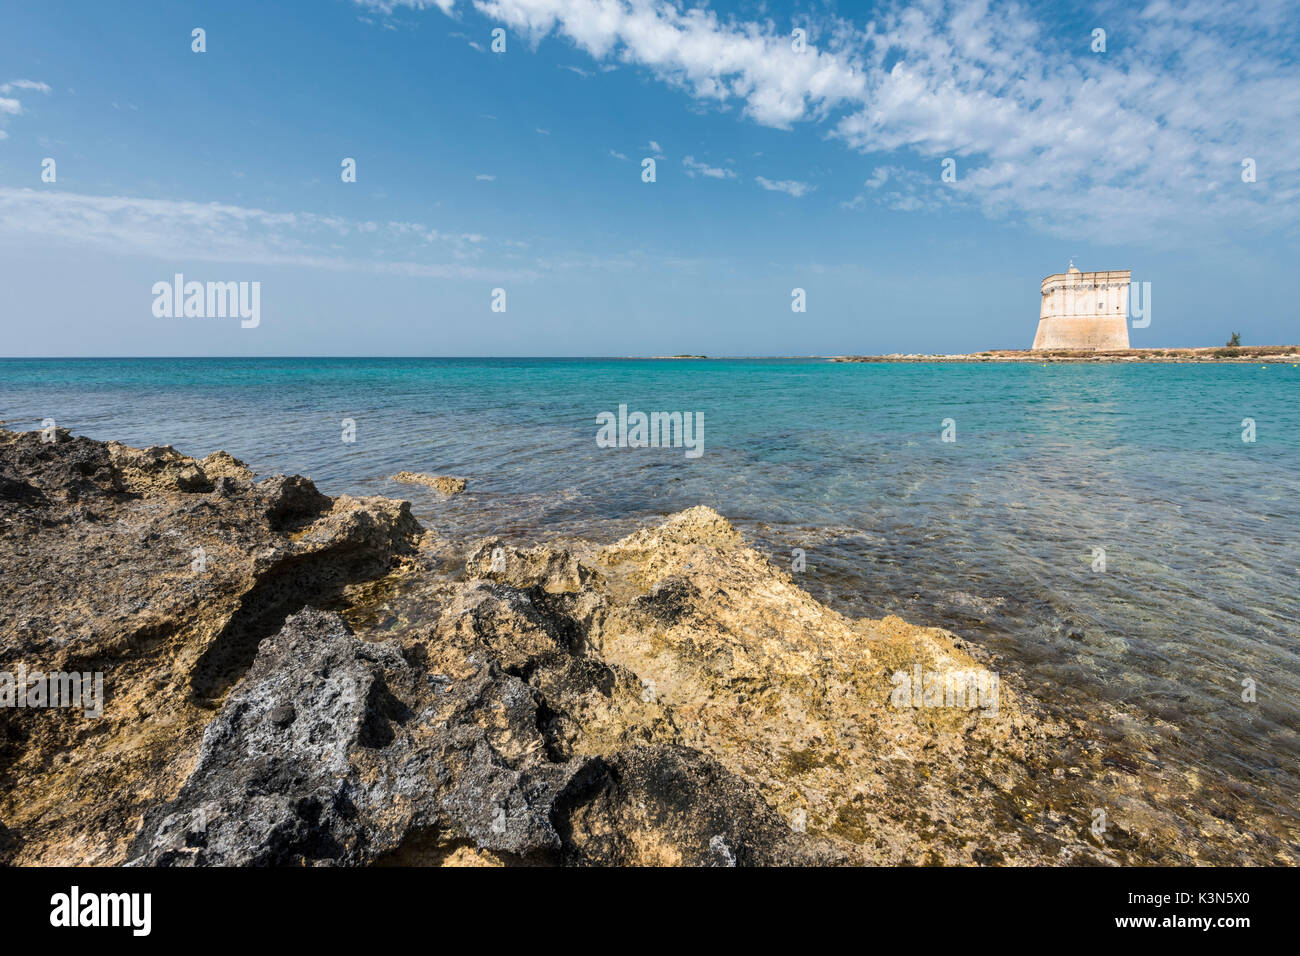 Porto Cesareo, province of Lecce, Salento, Apulia, Italy. The Chianca Tower Stock Photo